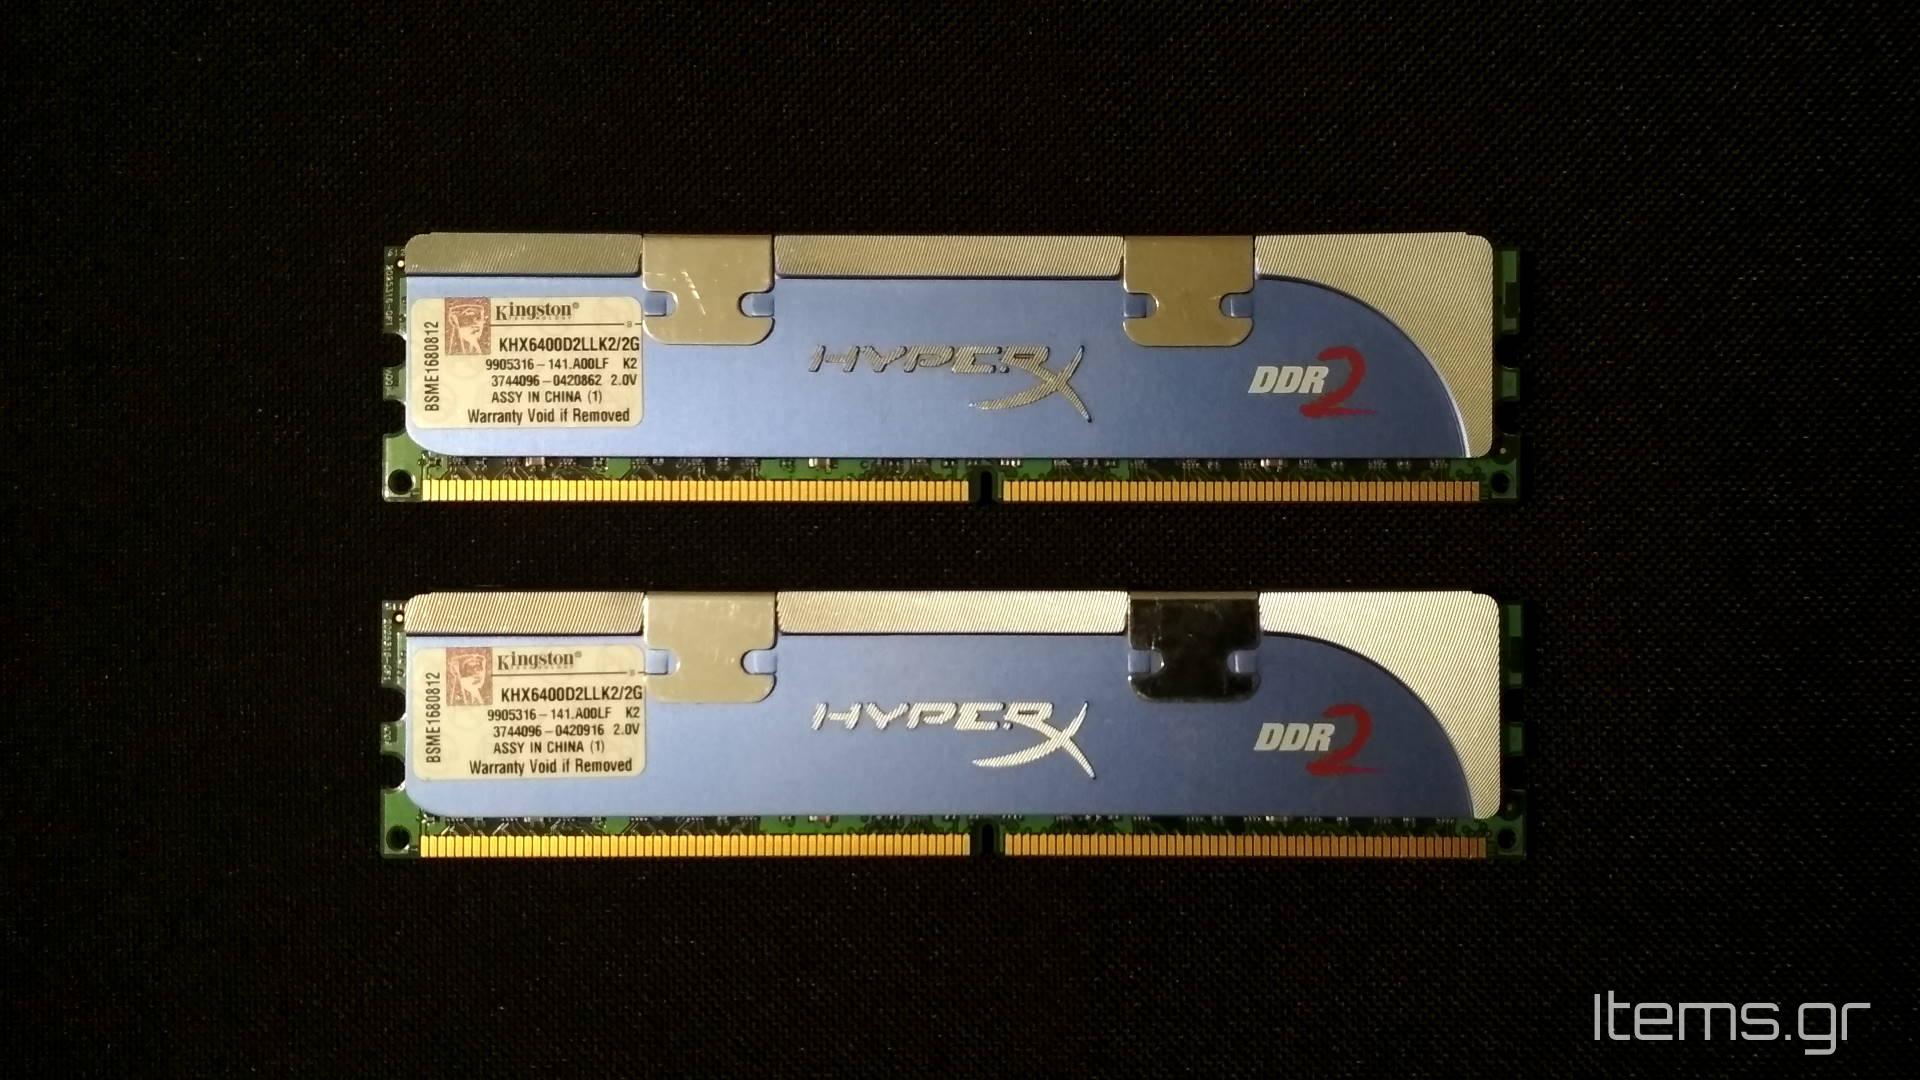 Μεταχειρισμένες μνήμες RAM Kingston HyperX 2x1GB DDR2 800MHz KHX6400D2LLK2/2G